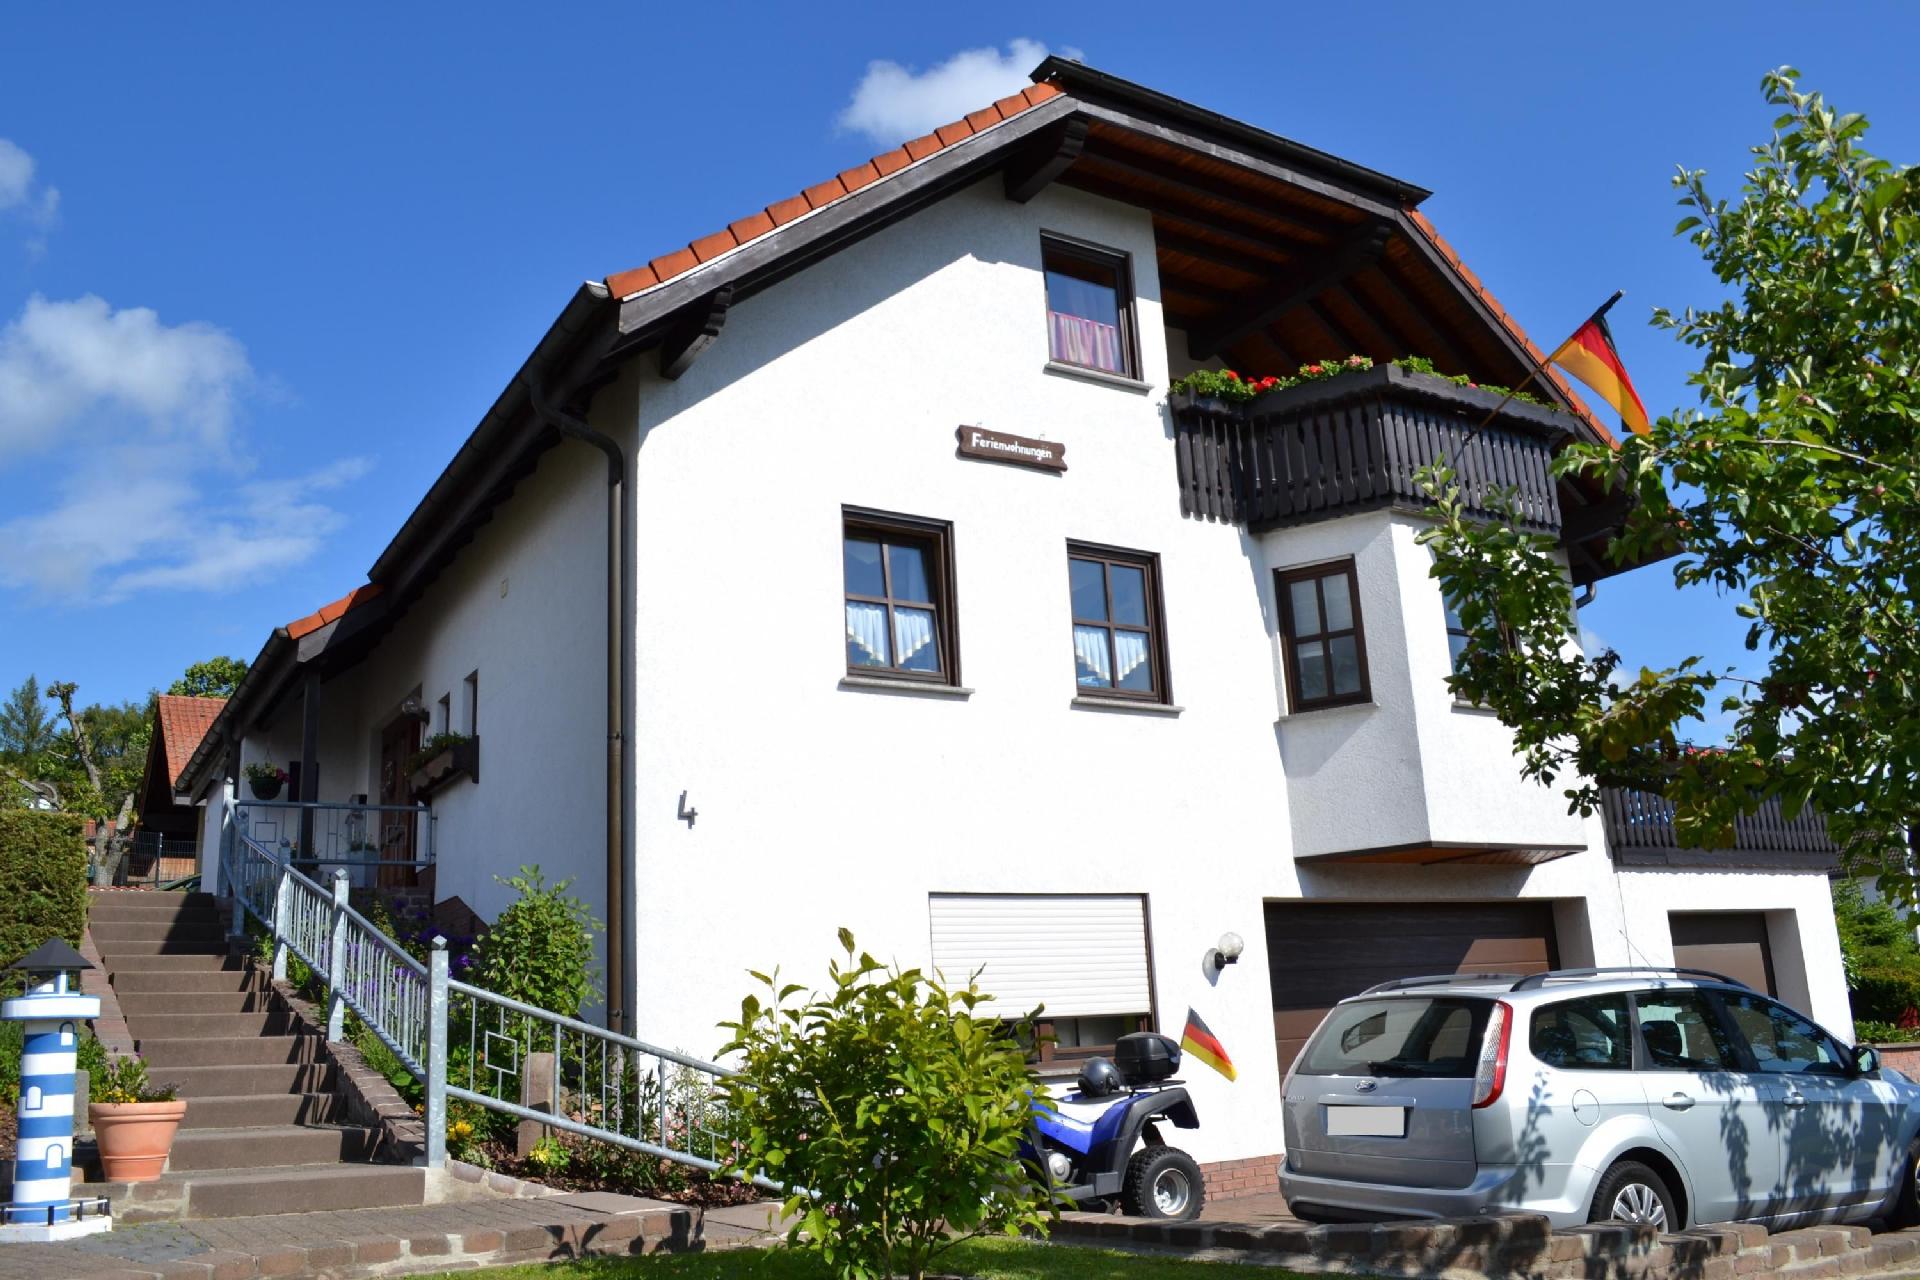 Appartement in Hilders mit Eigenem Balkon Ferienhaus in Hessen